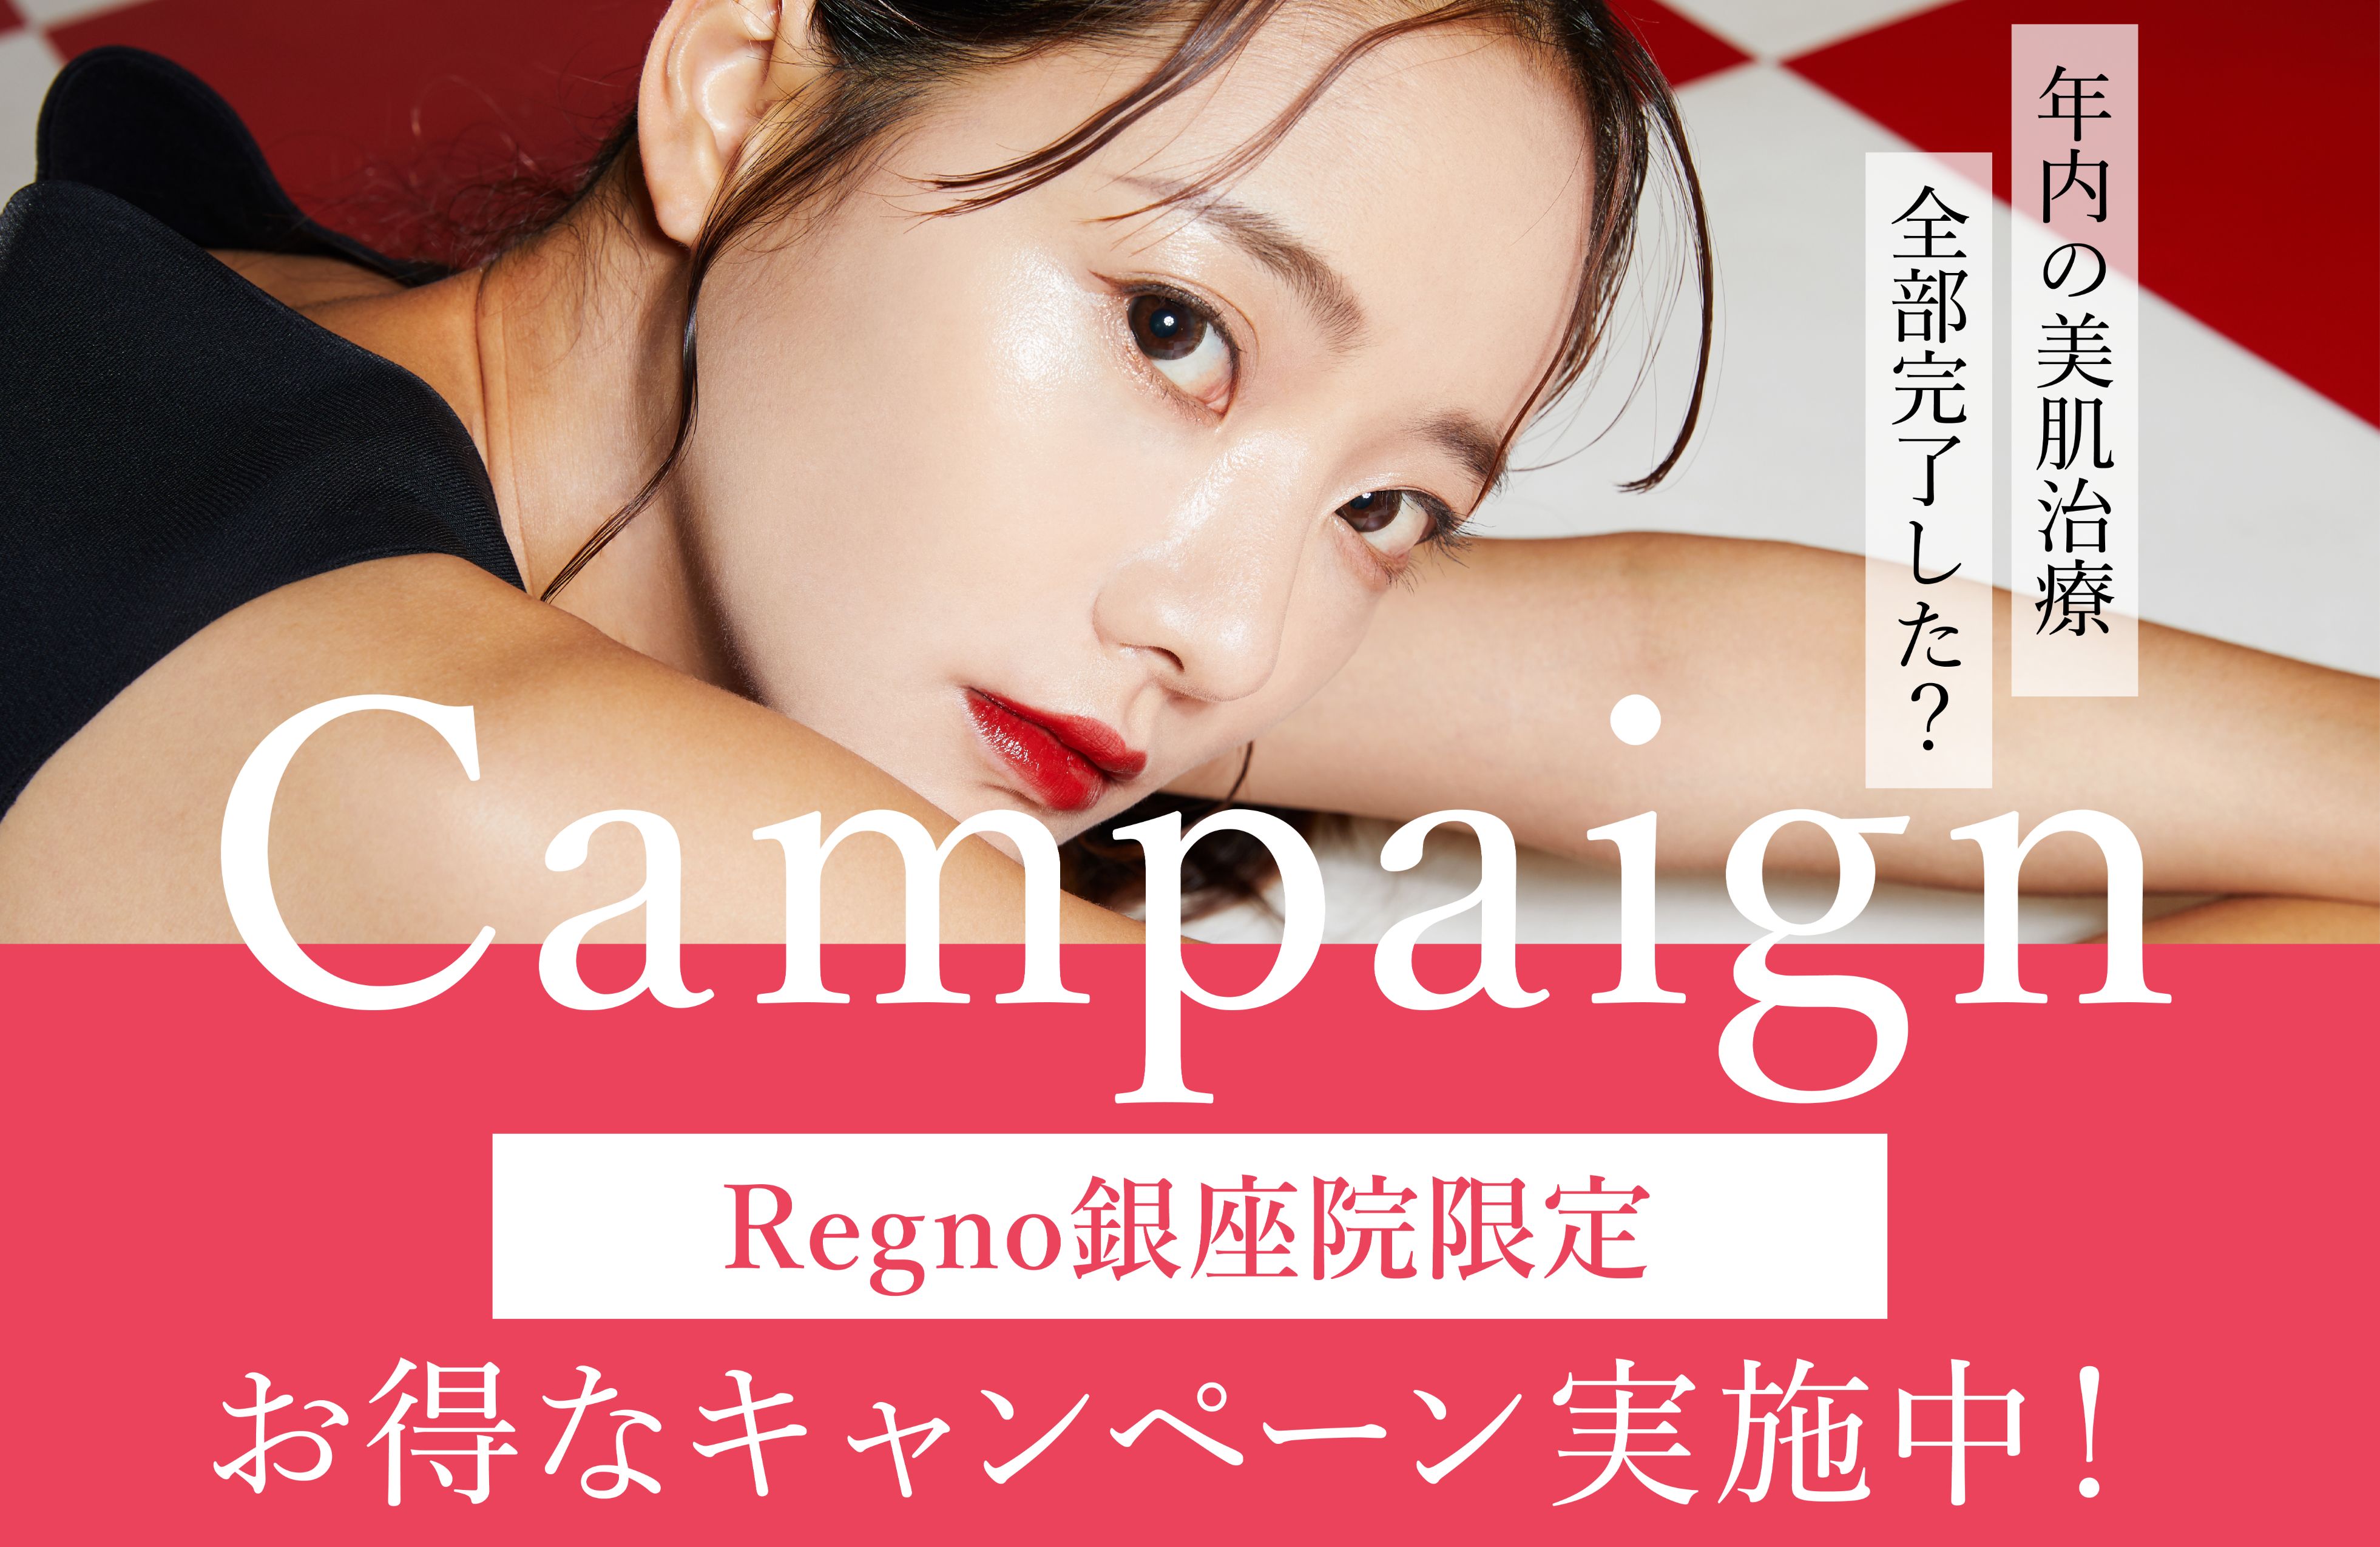 【美容皮膚科】Regno銀座院限定で実施中のキャンペーンをご案内します！